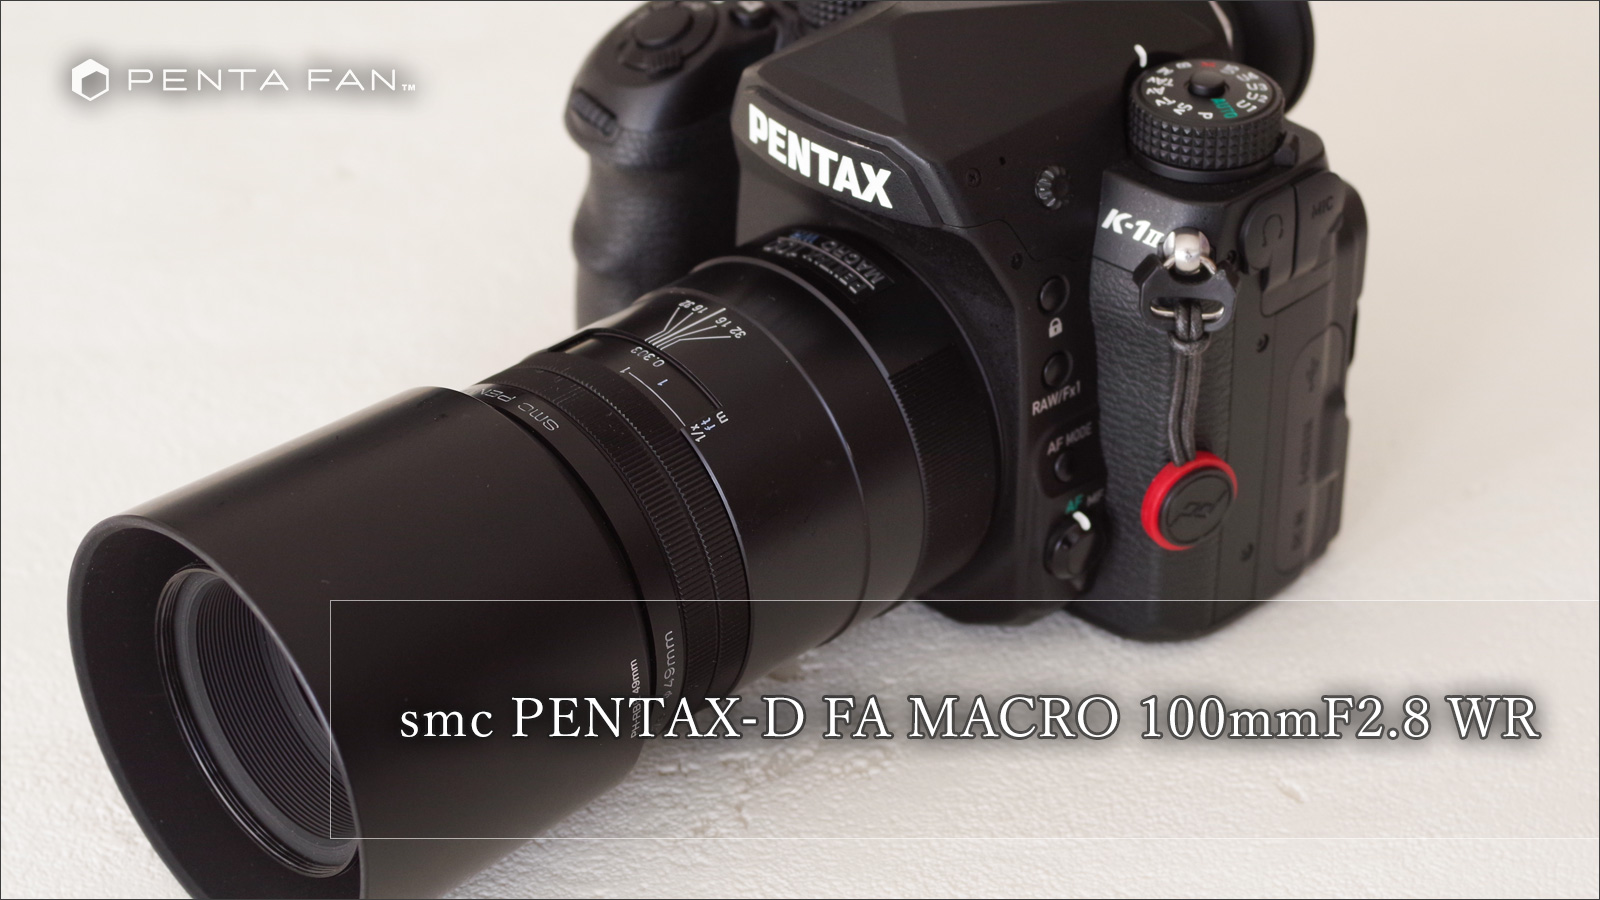 smc PENTAX-D FA MACRO 100mm F2.8 WR